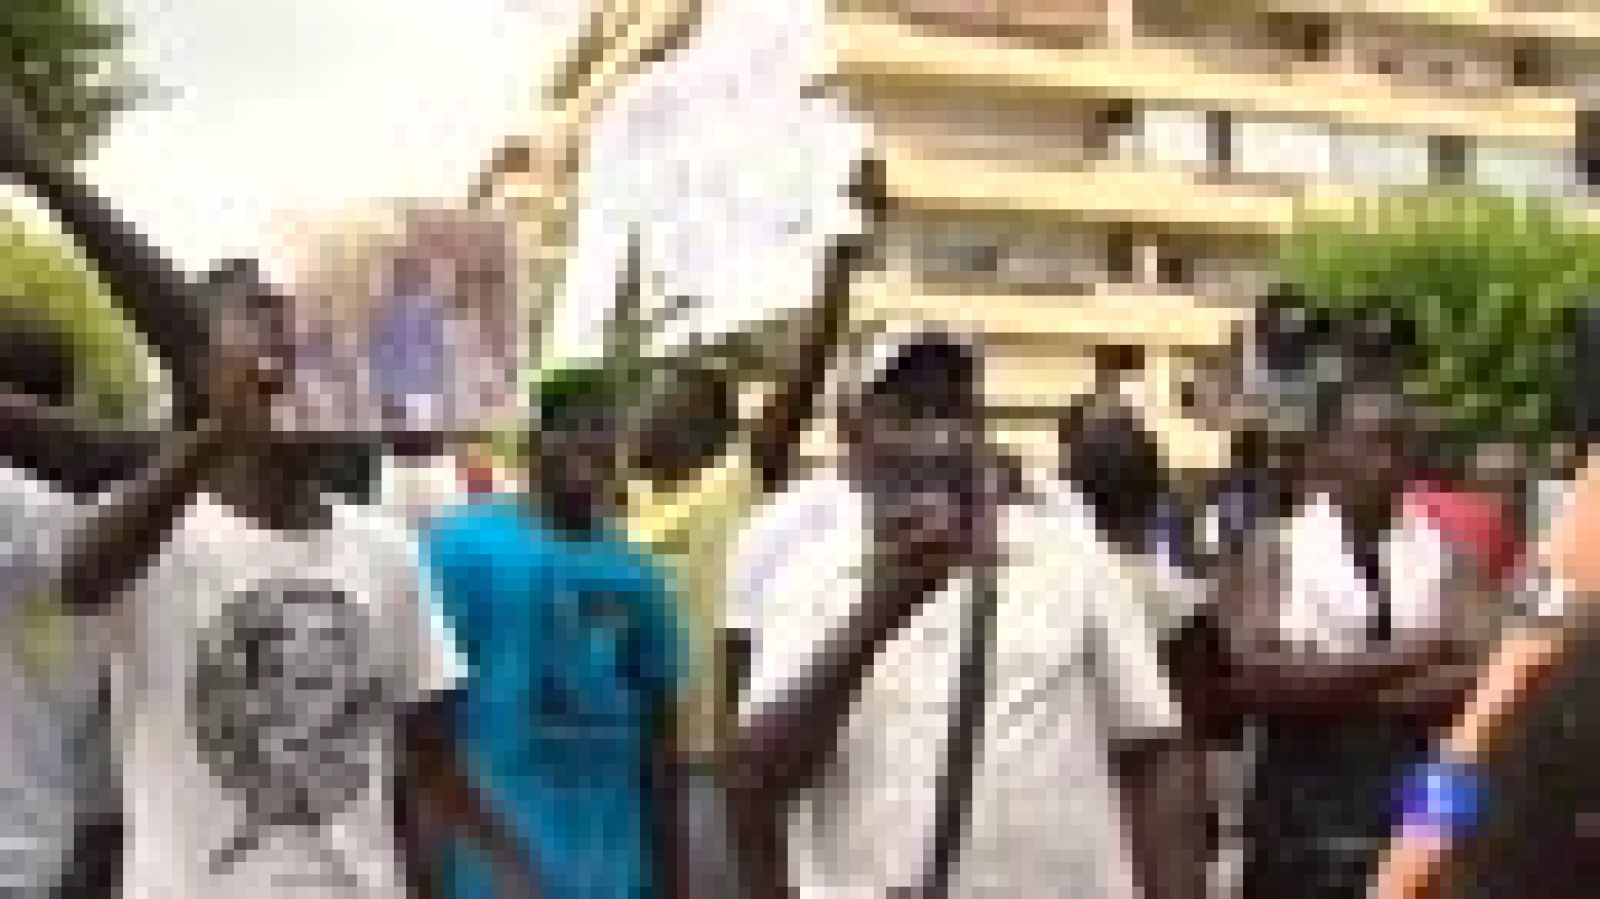 La muerte de un senegalés durante una operación contra el top manta provoca incidentes en Salou